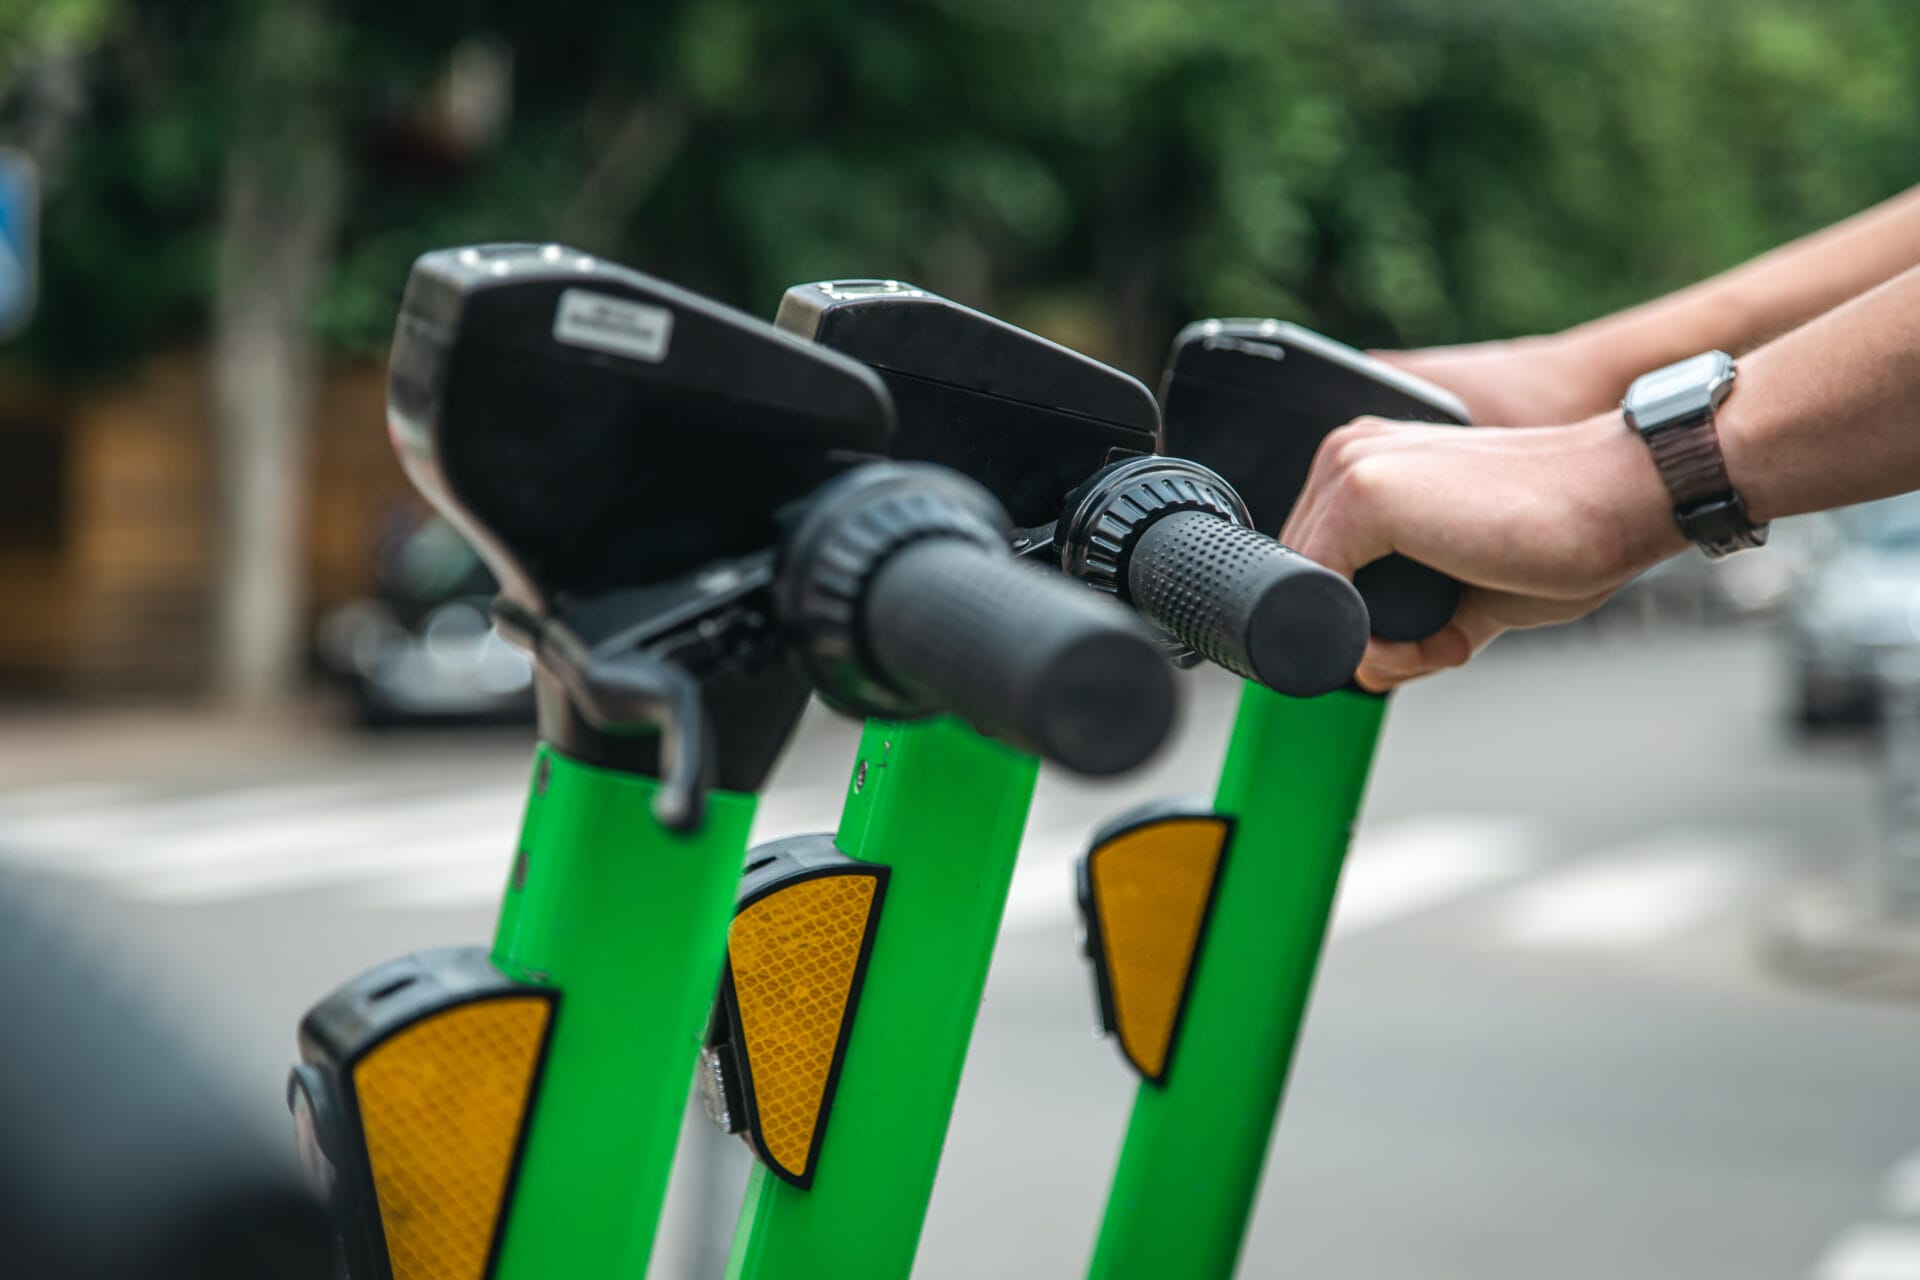 Primer plano de manos sosteniendo el manillar de dos scooters eléctricos verdes en una calle de la ciudad, centrándose en opciones de movilidad limpia.